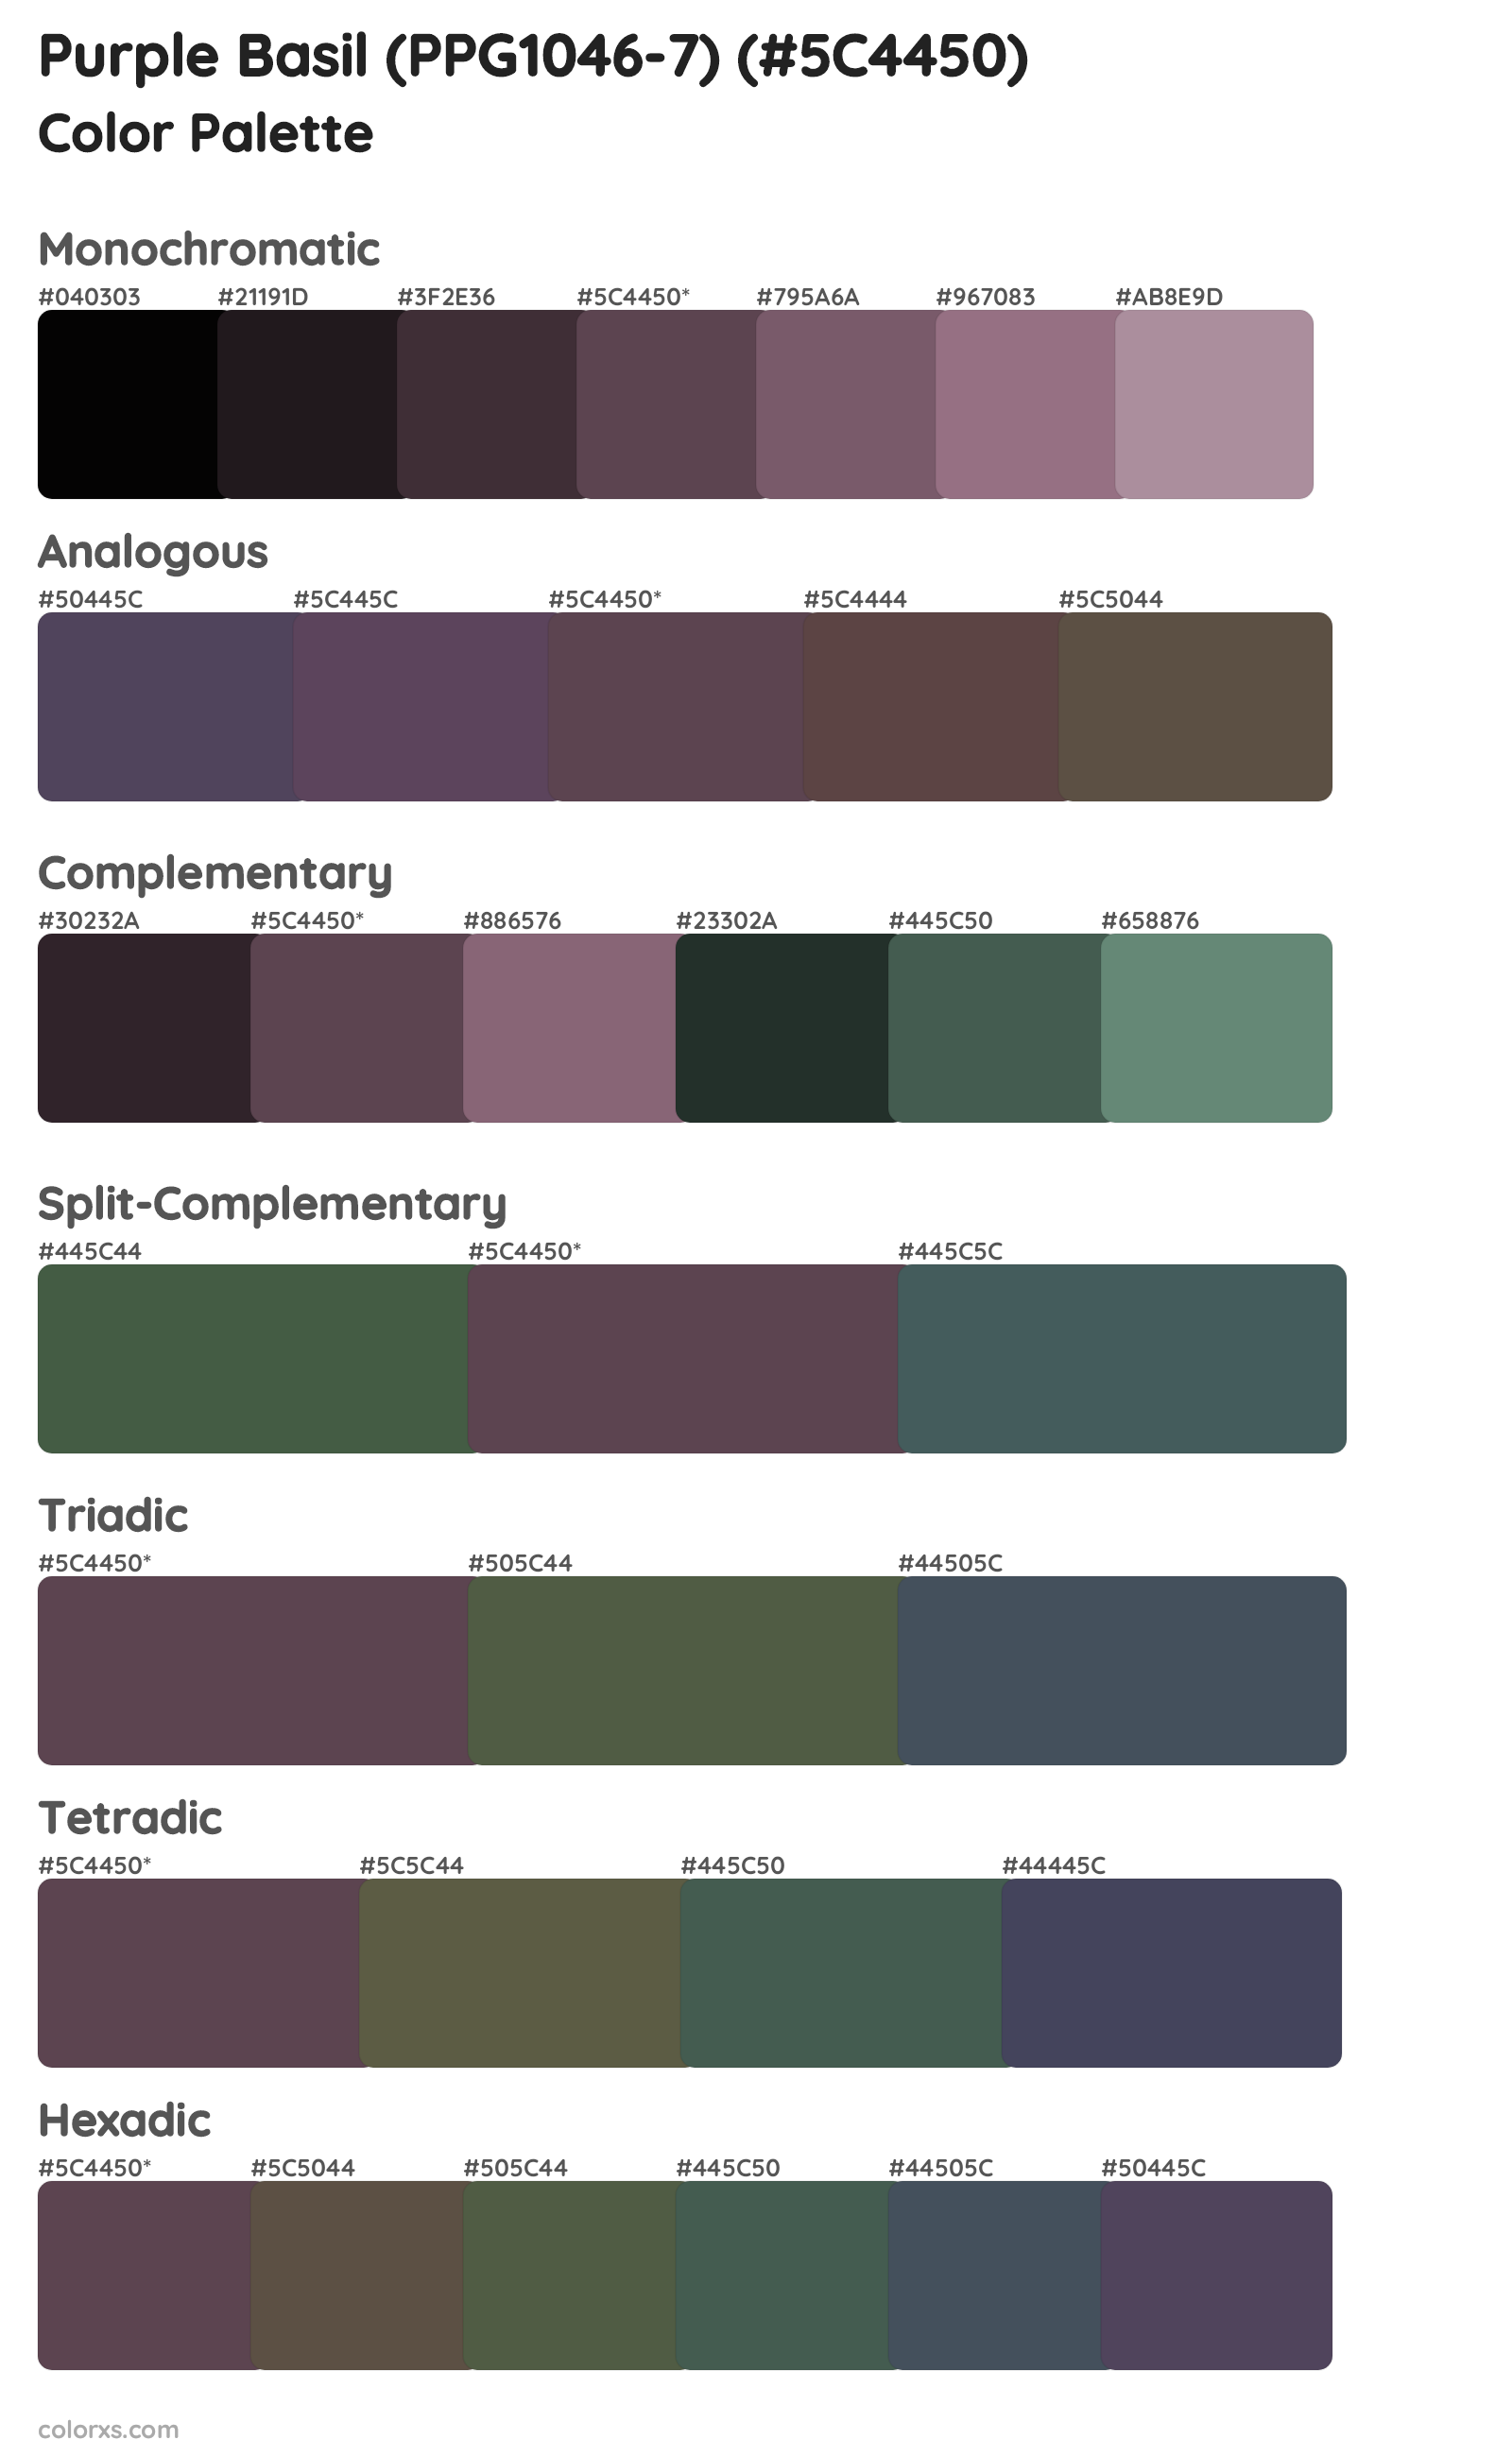 Purple Basil (PPG1046-7) Color Scheme Palettes